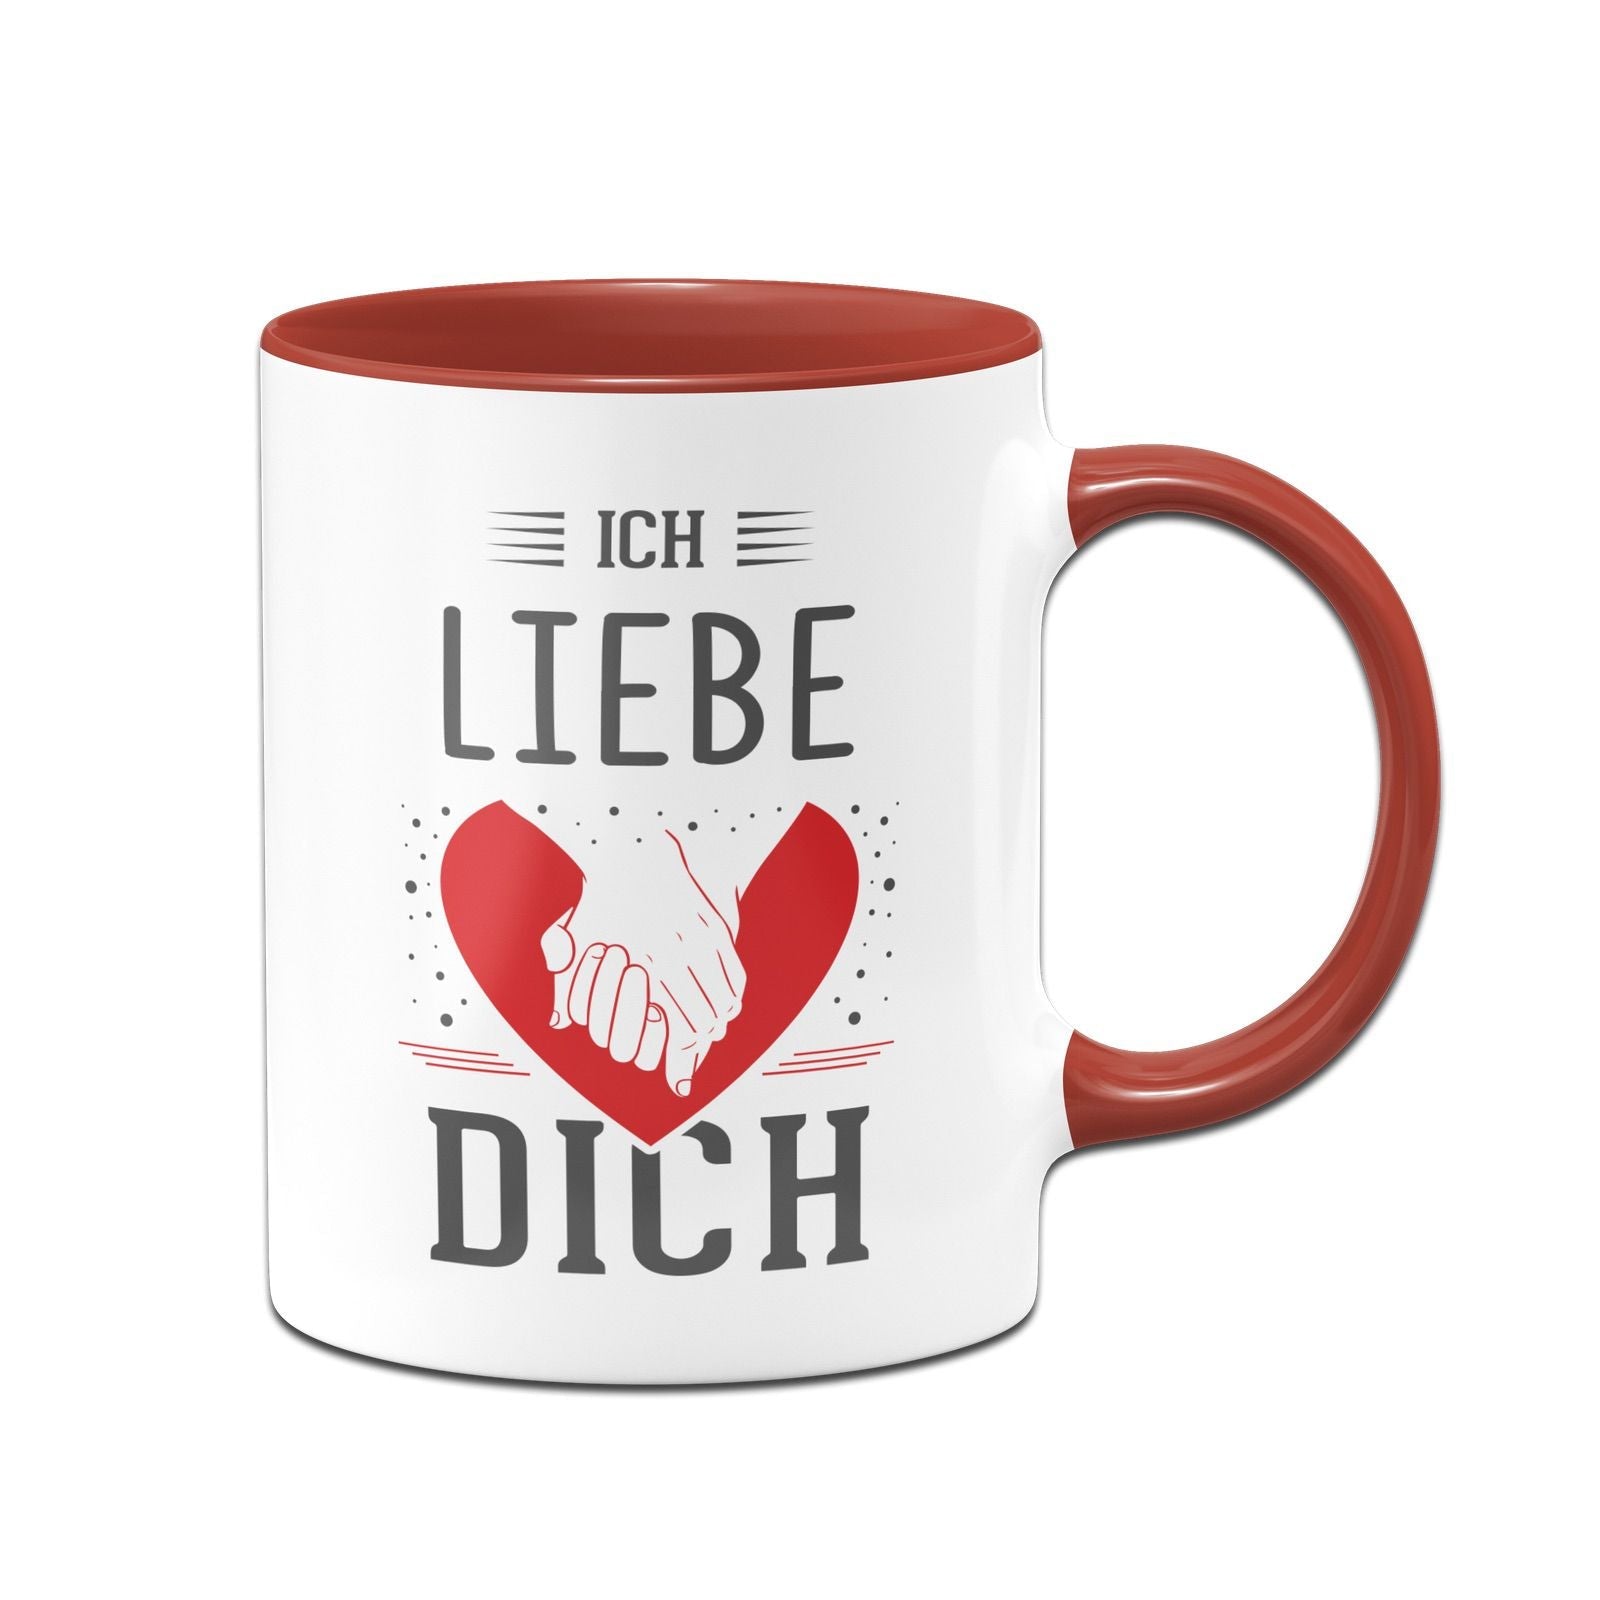 Tasse Ich Liebe Dich ️ 🤝 Geschenk Liebeserklärung Tassenbrennerei 1849